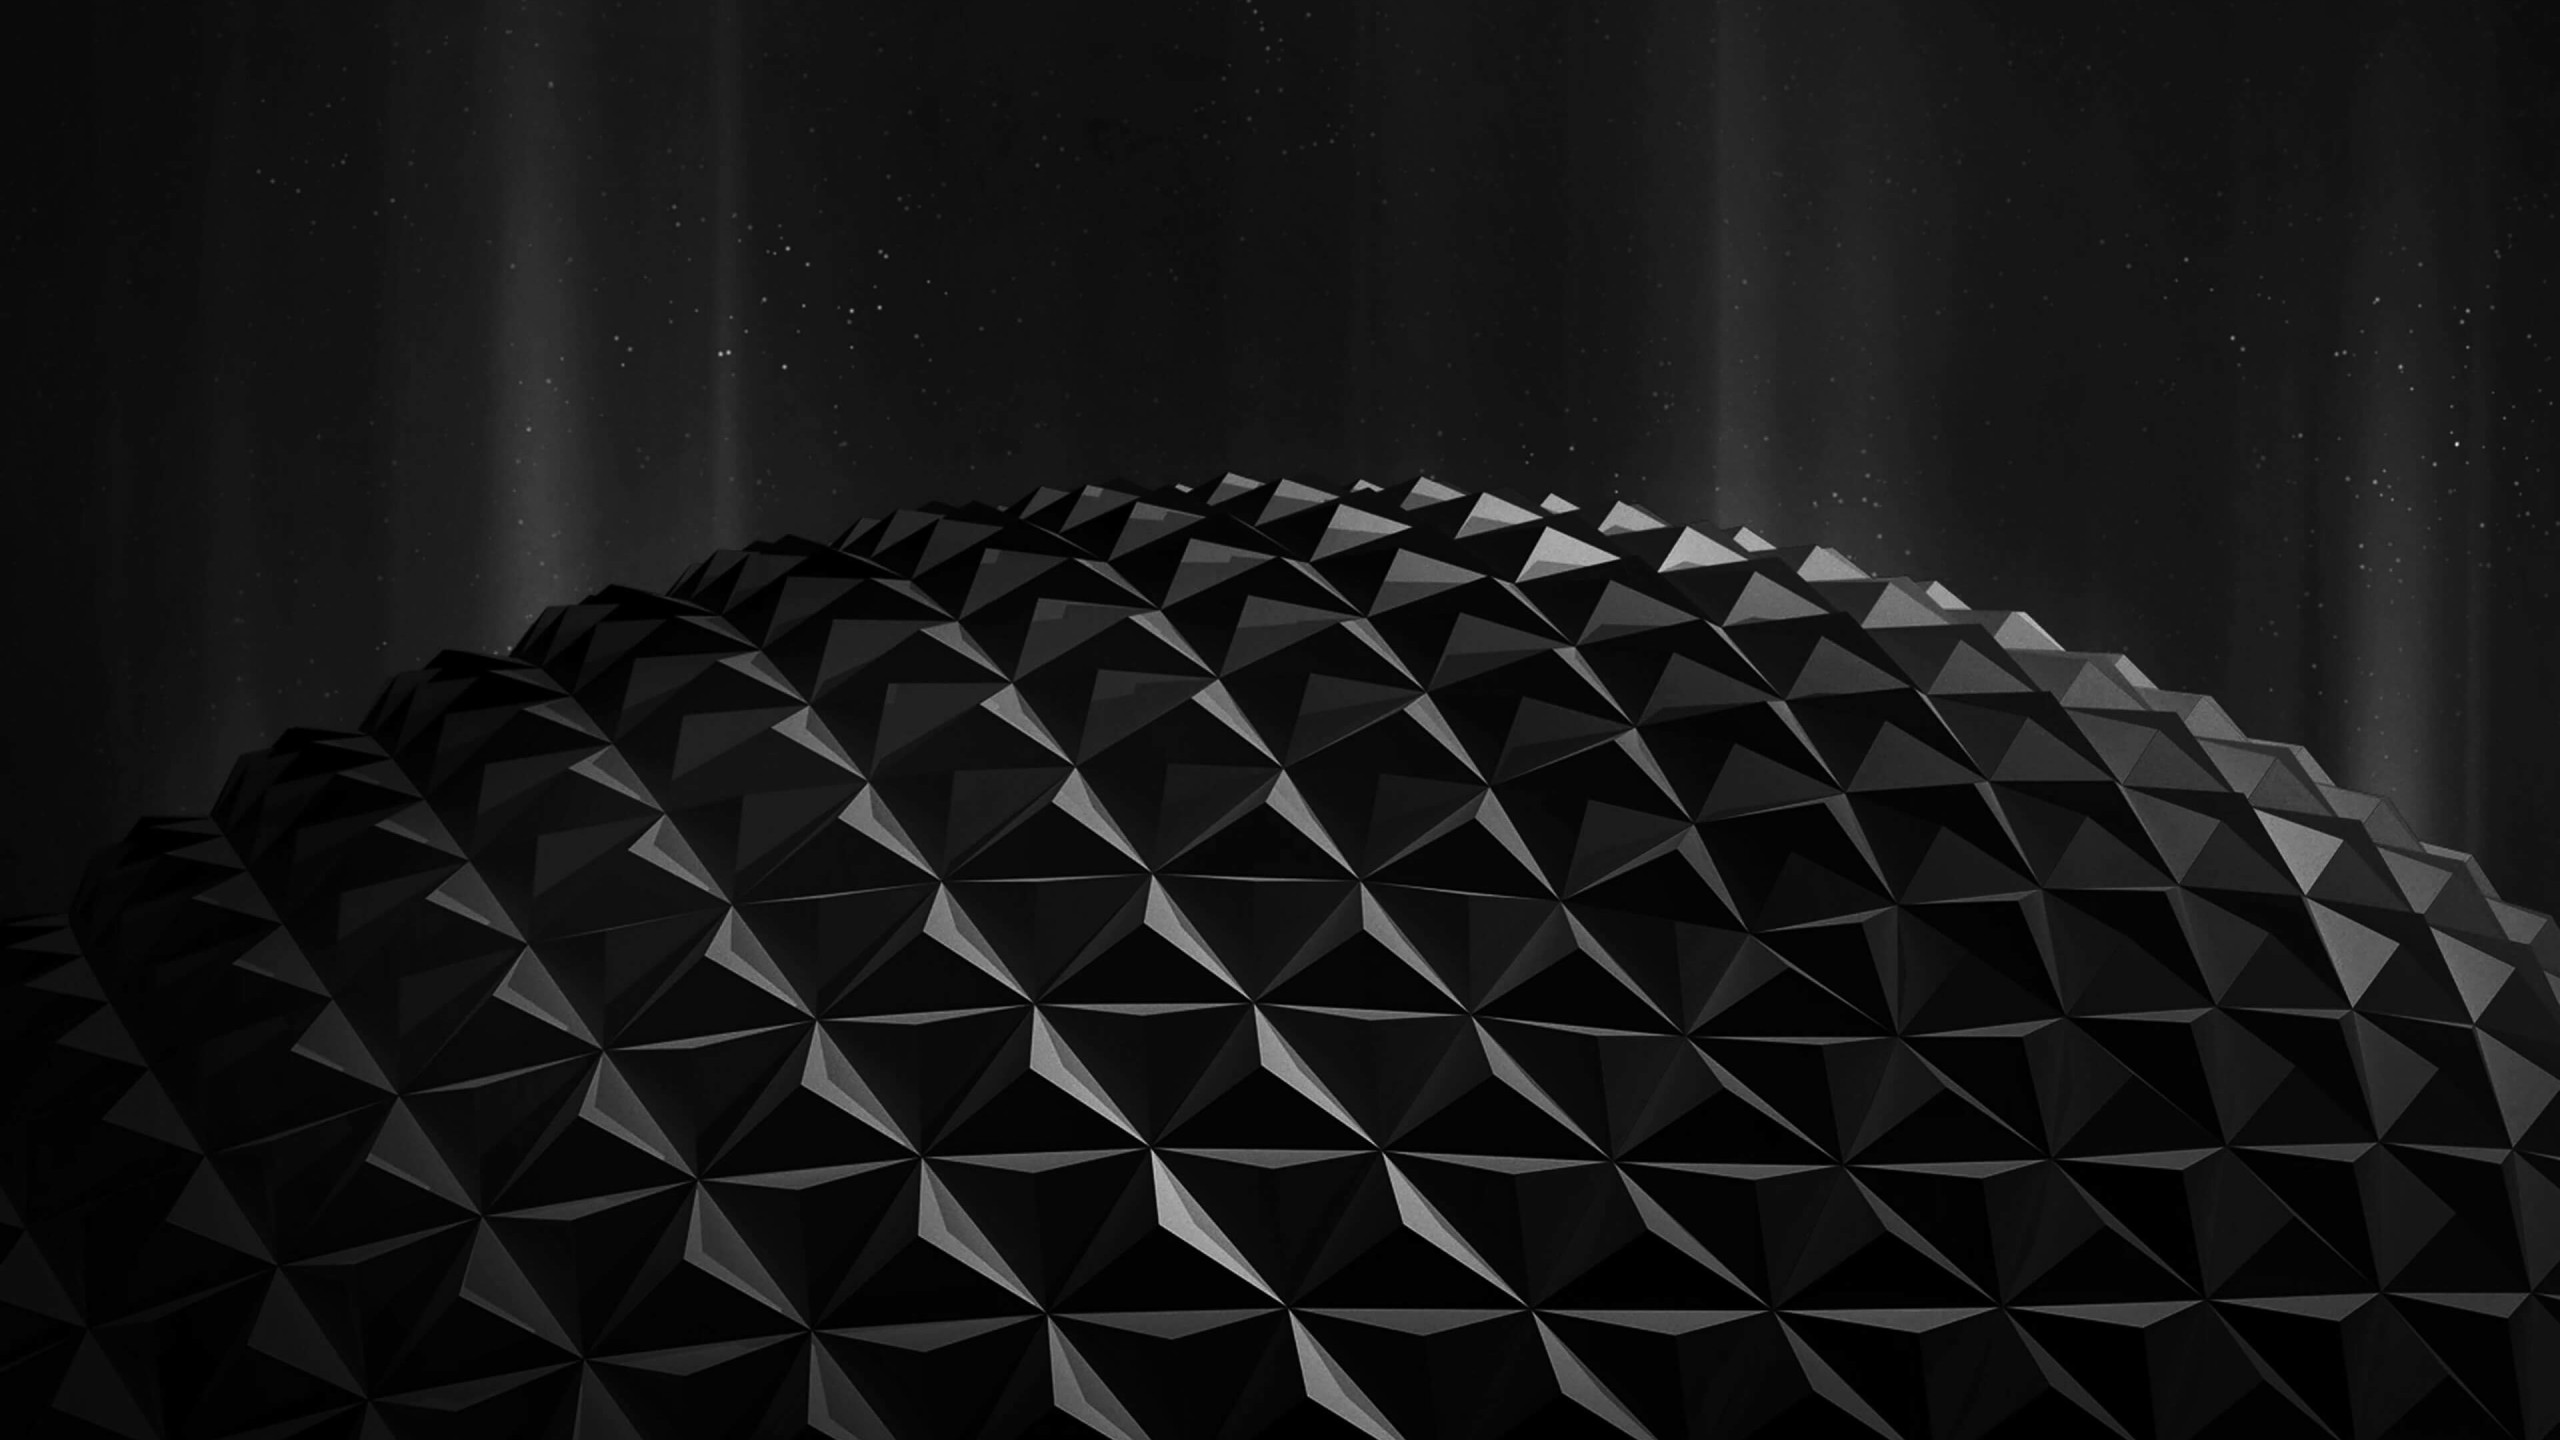 Black Polygon Planet Wallpaper for Desktop 2560x1440